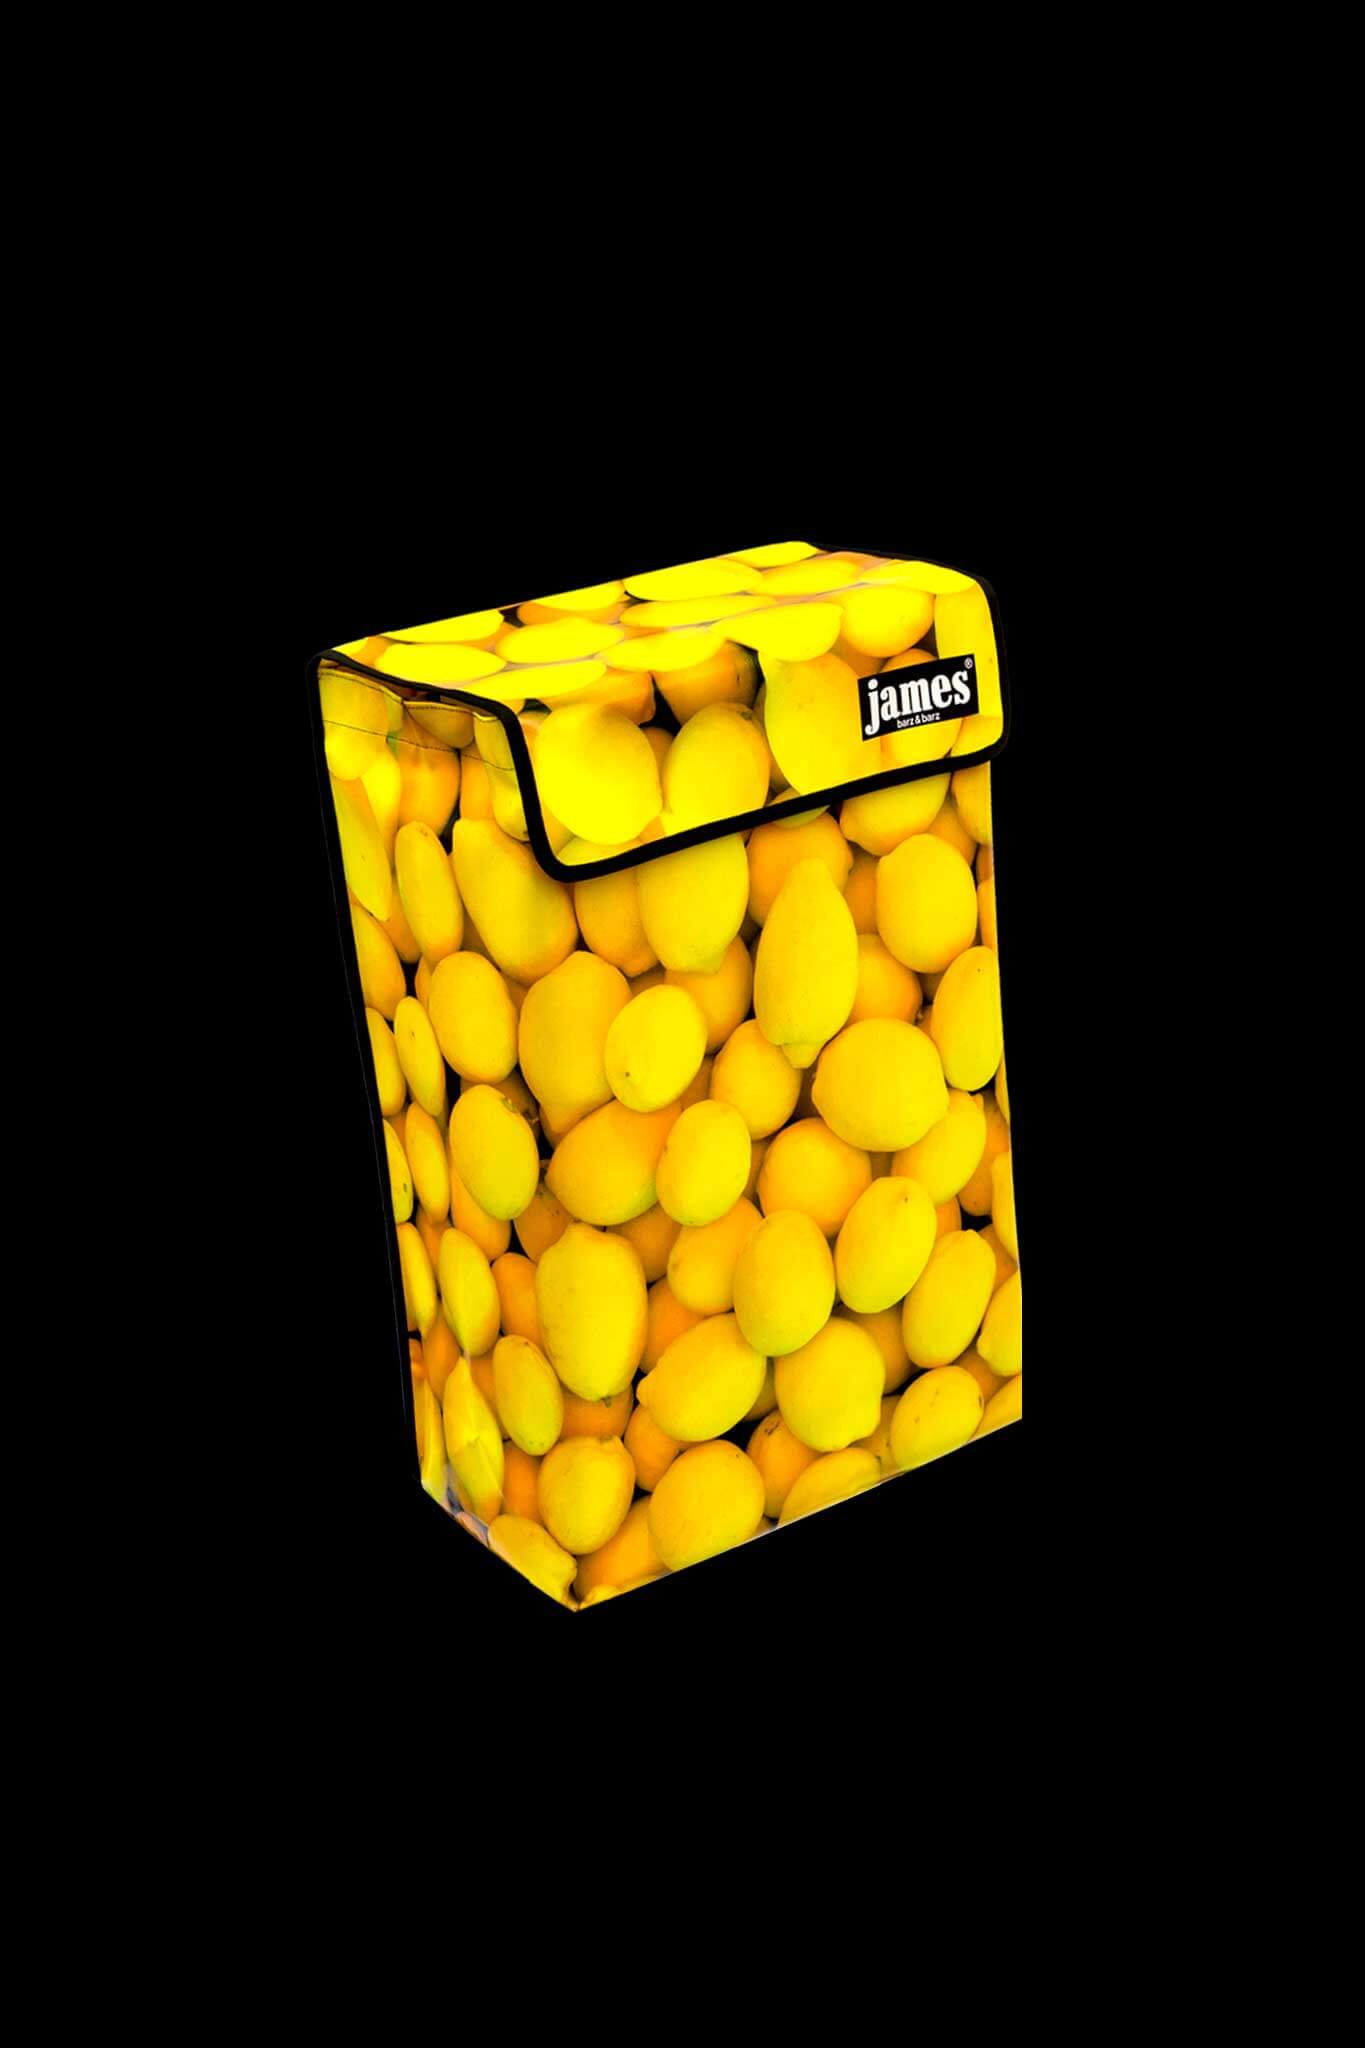 Lemon-James®